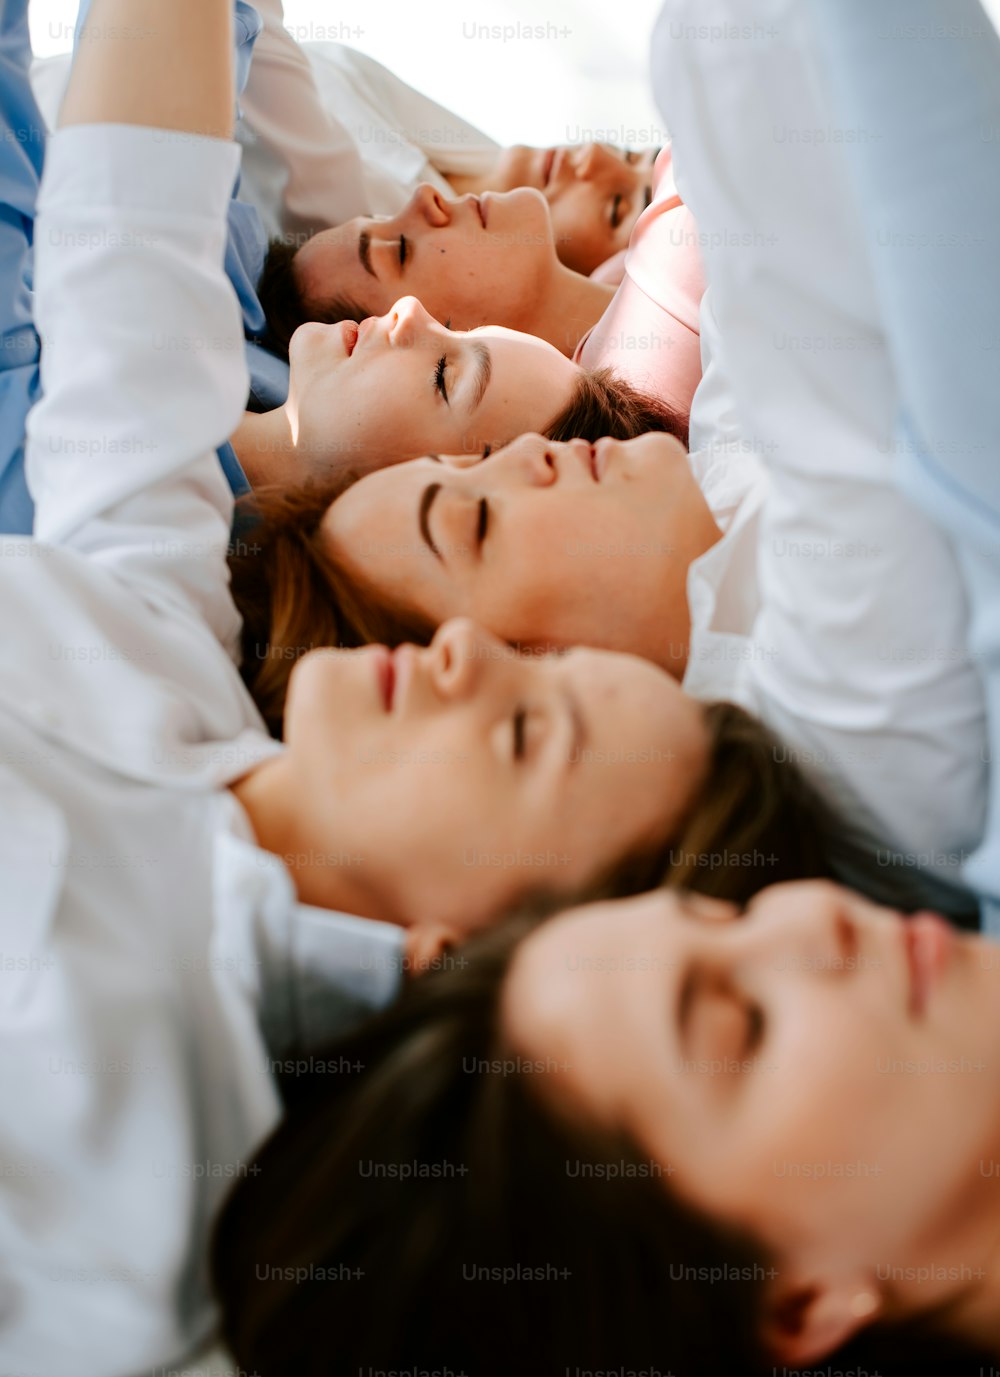 un groupe de femmes allongées les unes sur les autres